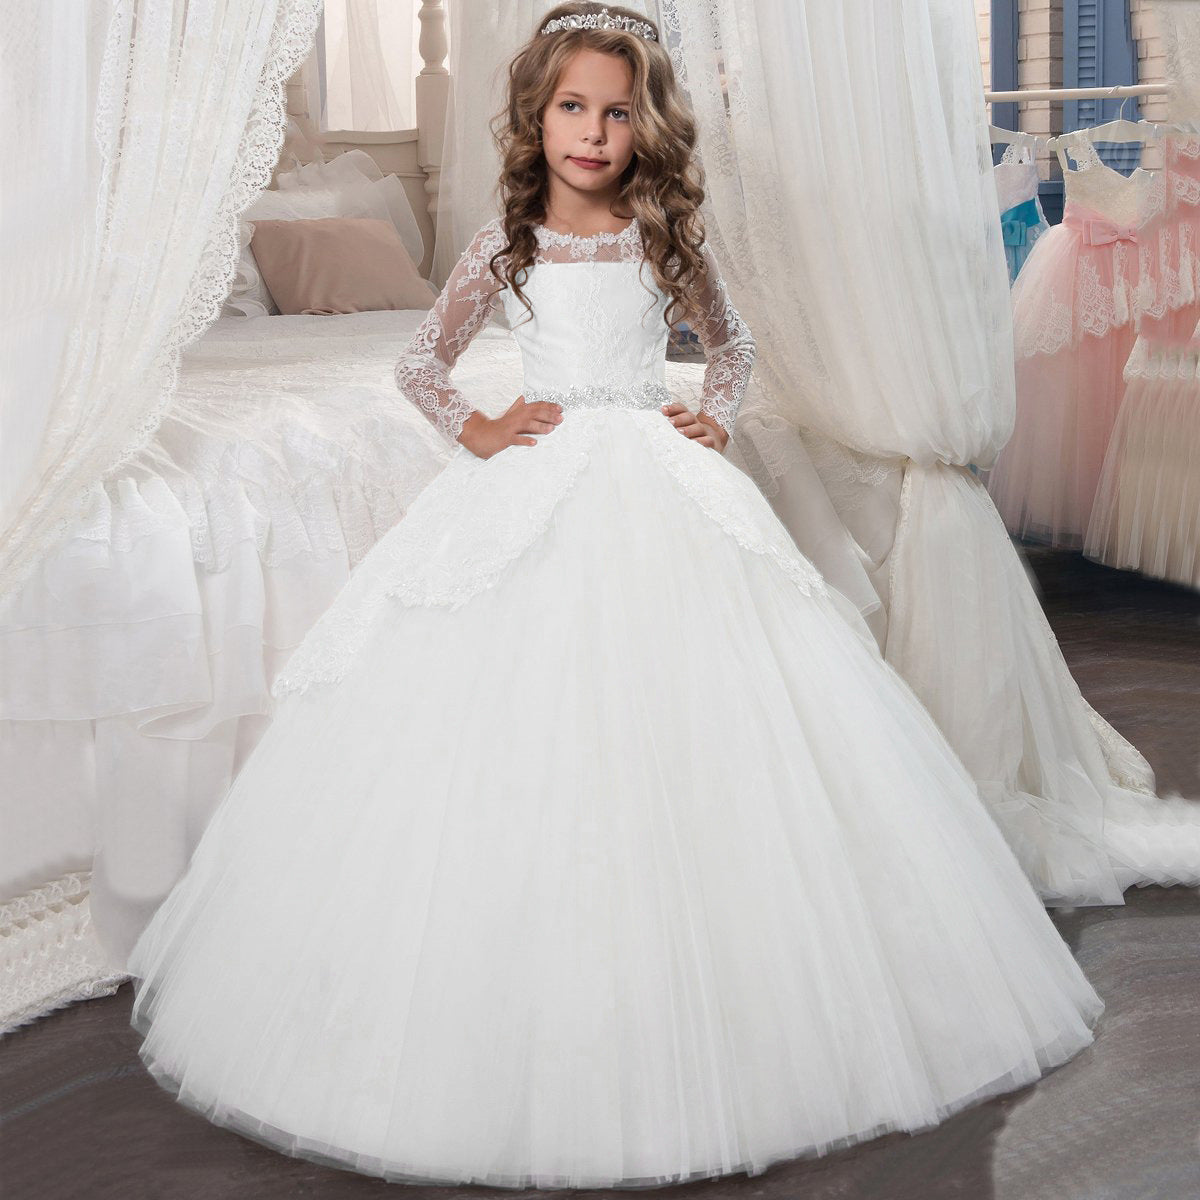 Flower Long White Dress Kids Dresses For Children Princess Dress